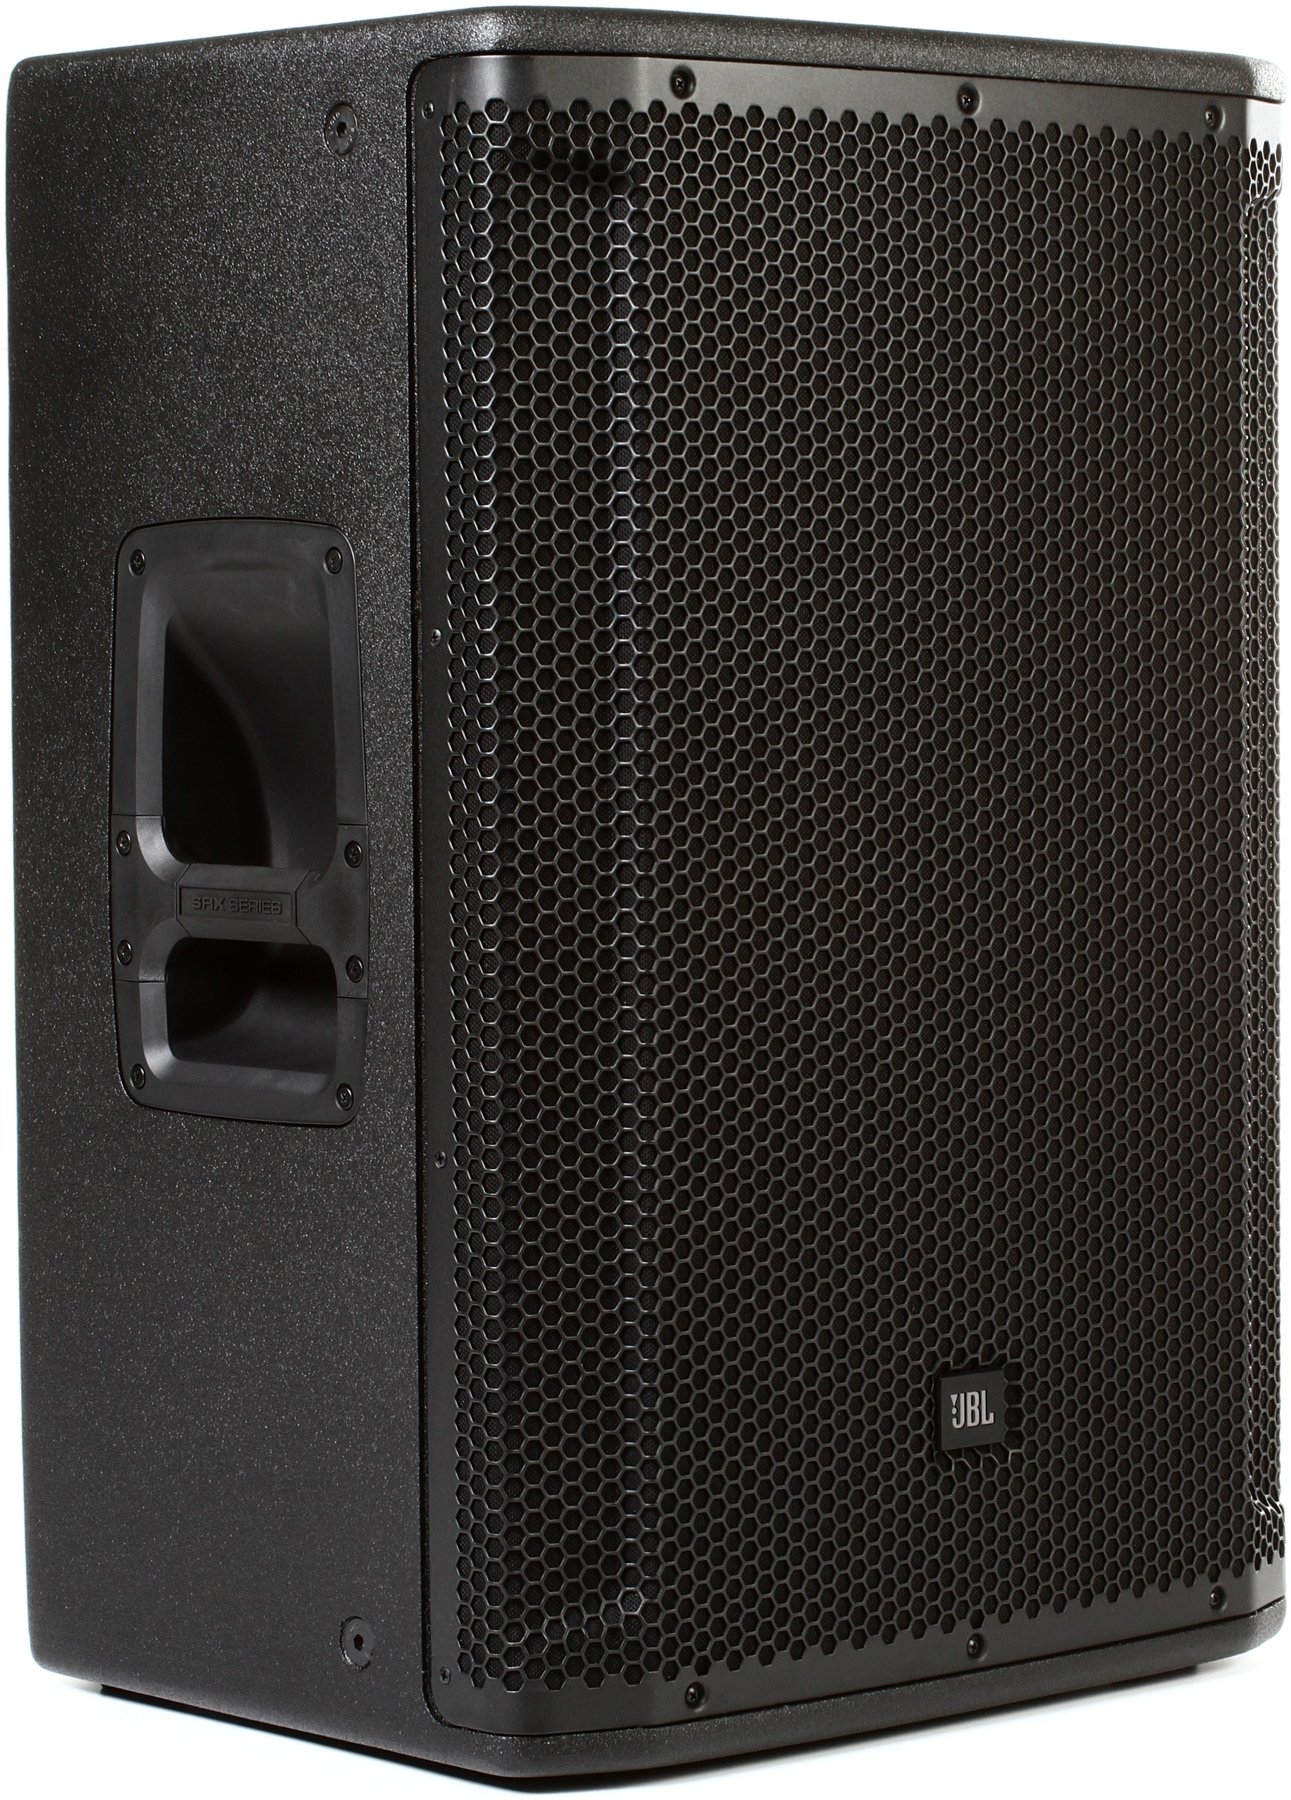 jbl speakers 18 inch 2000 watt price